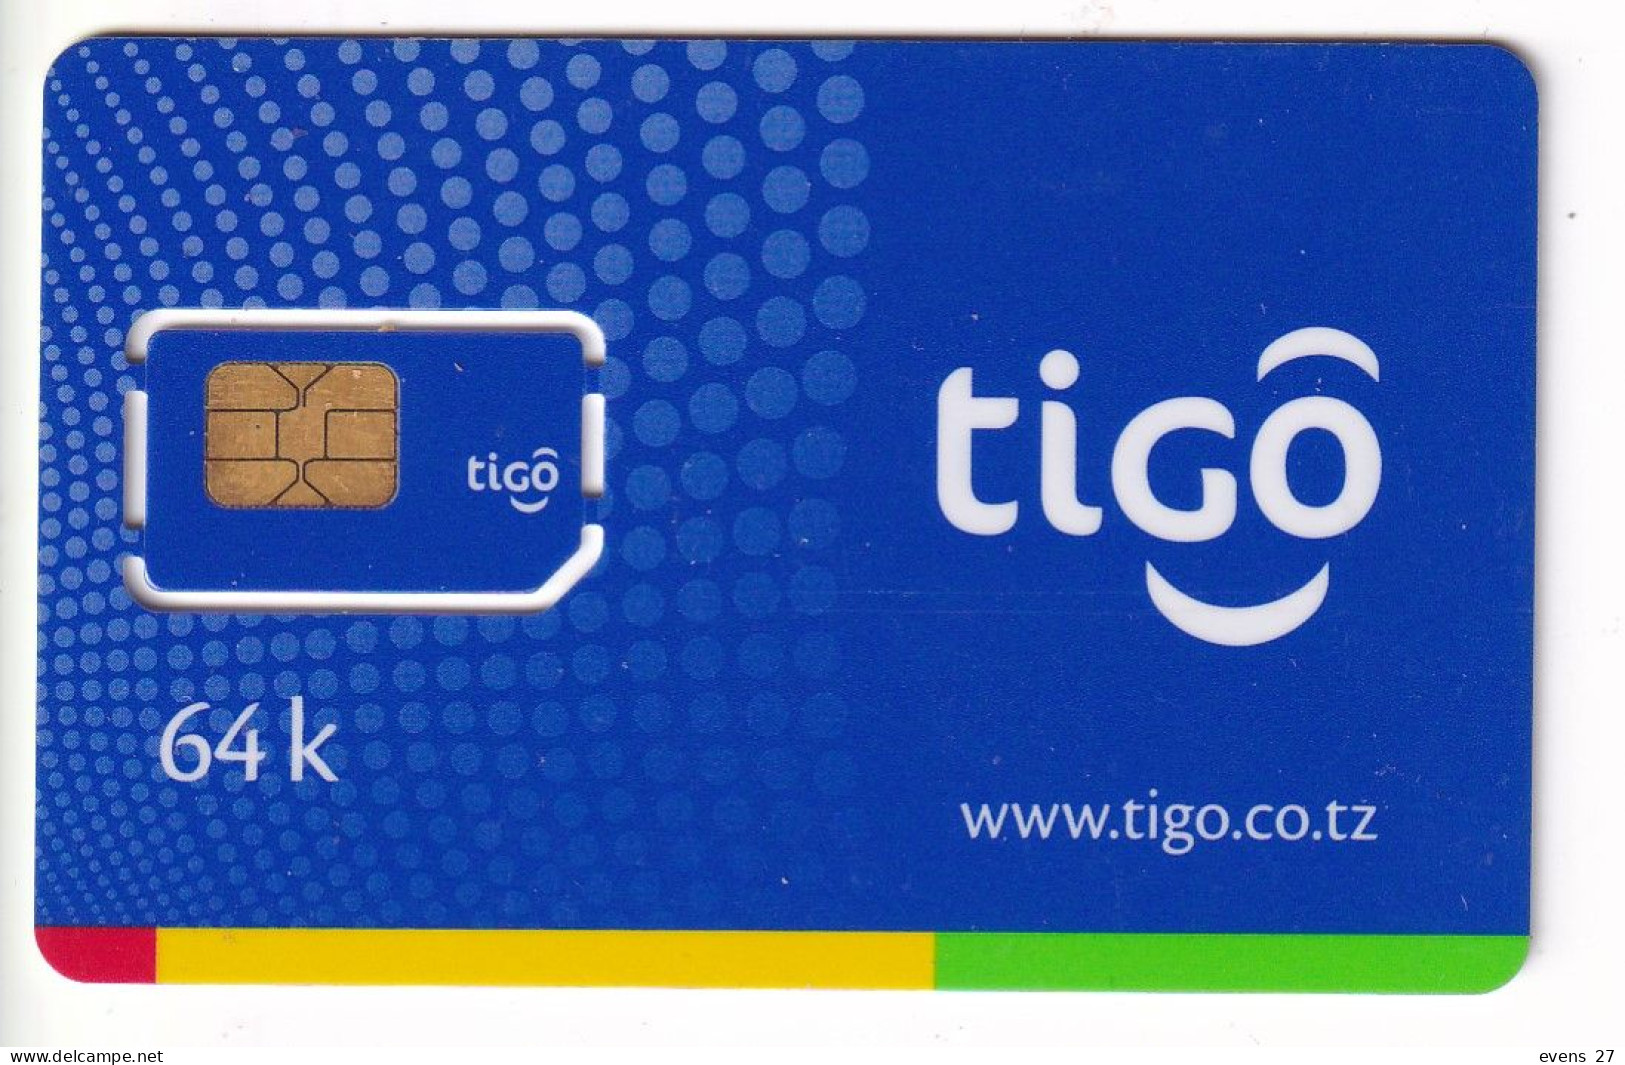 TANZANIA-TIGO-SIM CARD MINT UNUSED, - Autres - Afrique